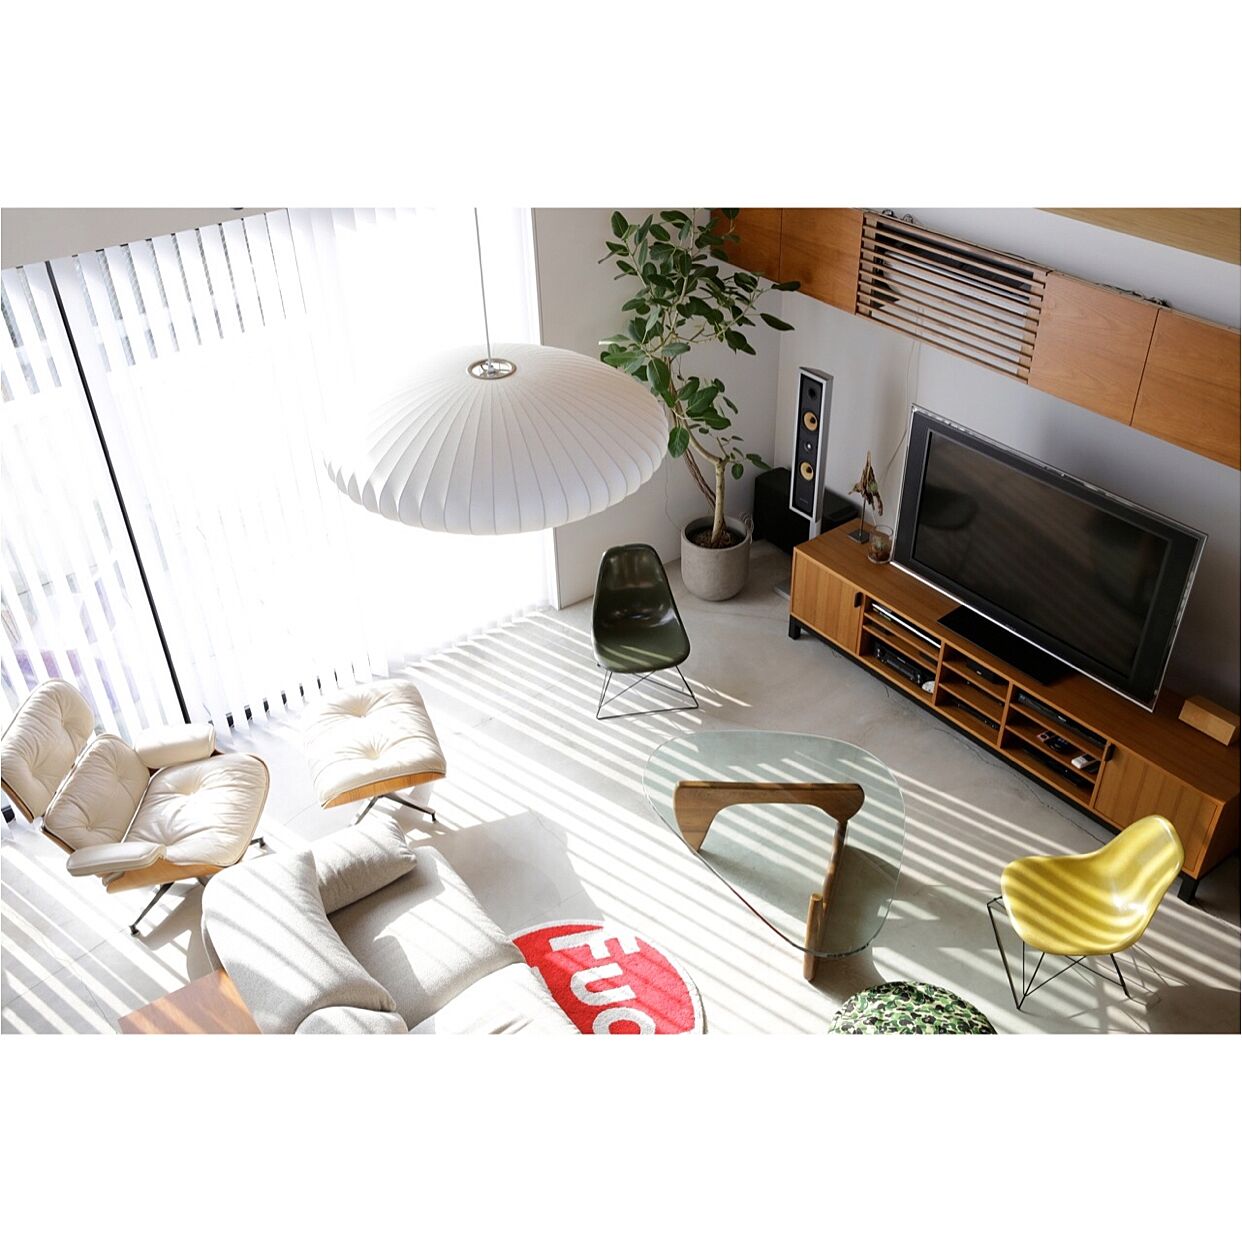 生活感ゼロ スタイル別 モデルハウス並みに整えられた部屋 Roomclip Mag 暮らしとインテリアのwebマガジン